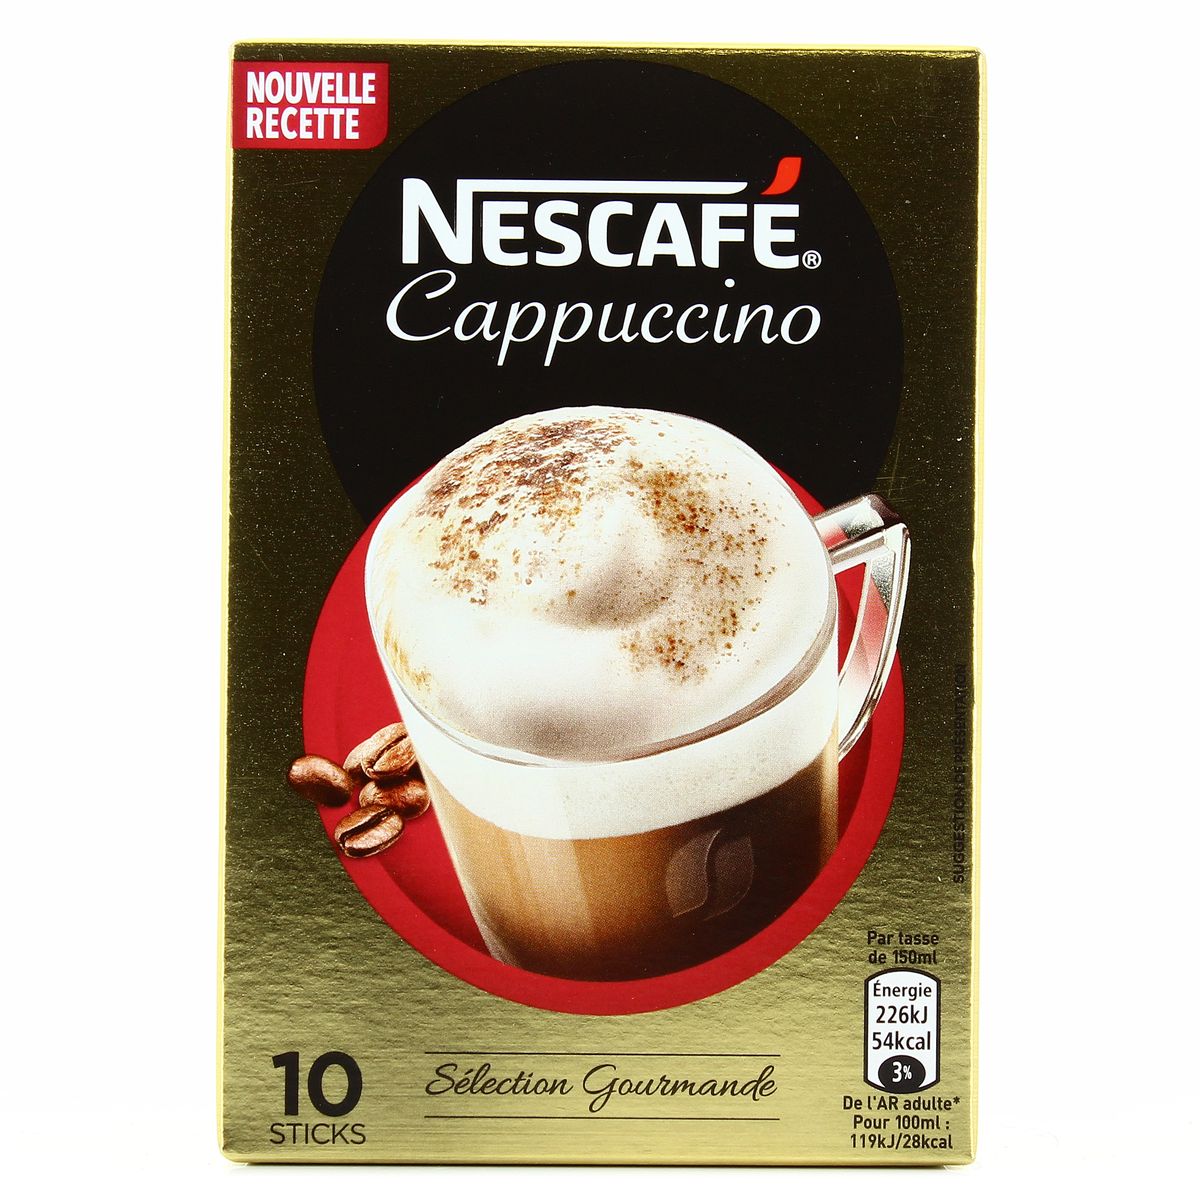 Nescafé cappuccino noisettes de Nescafé